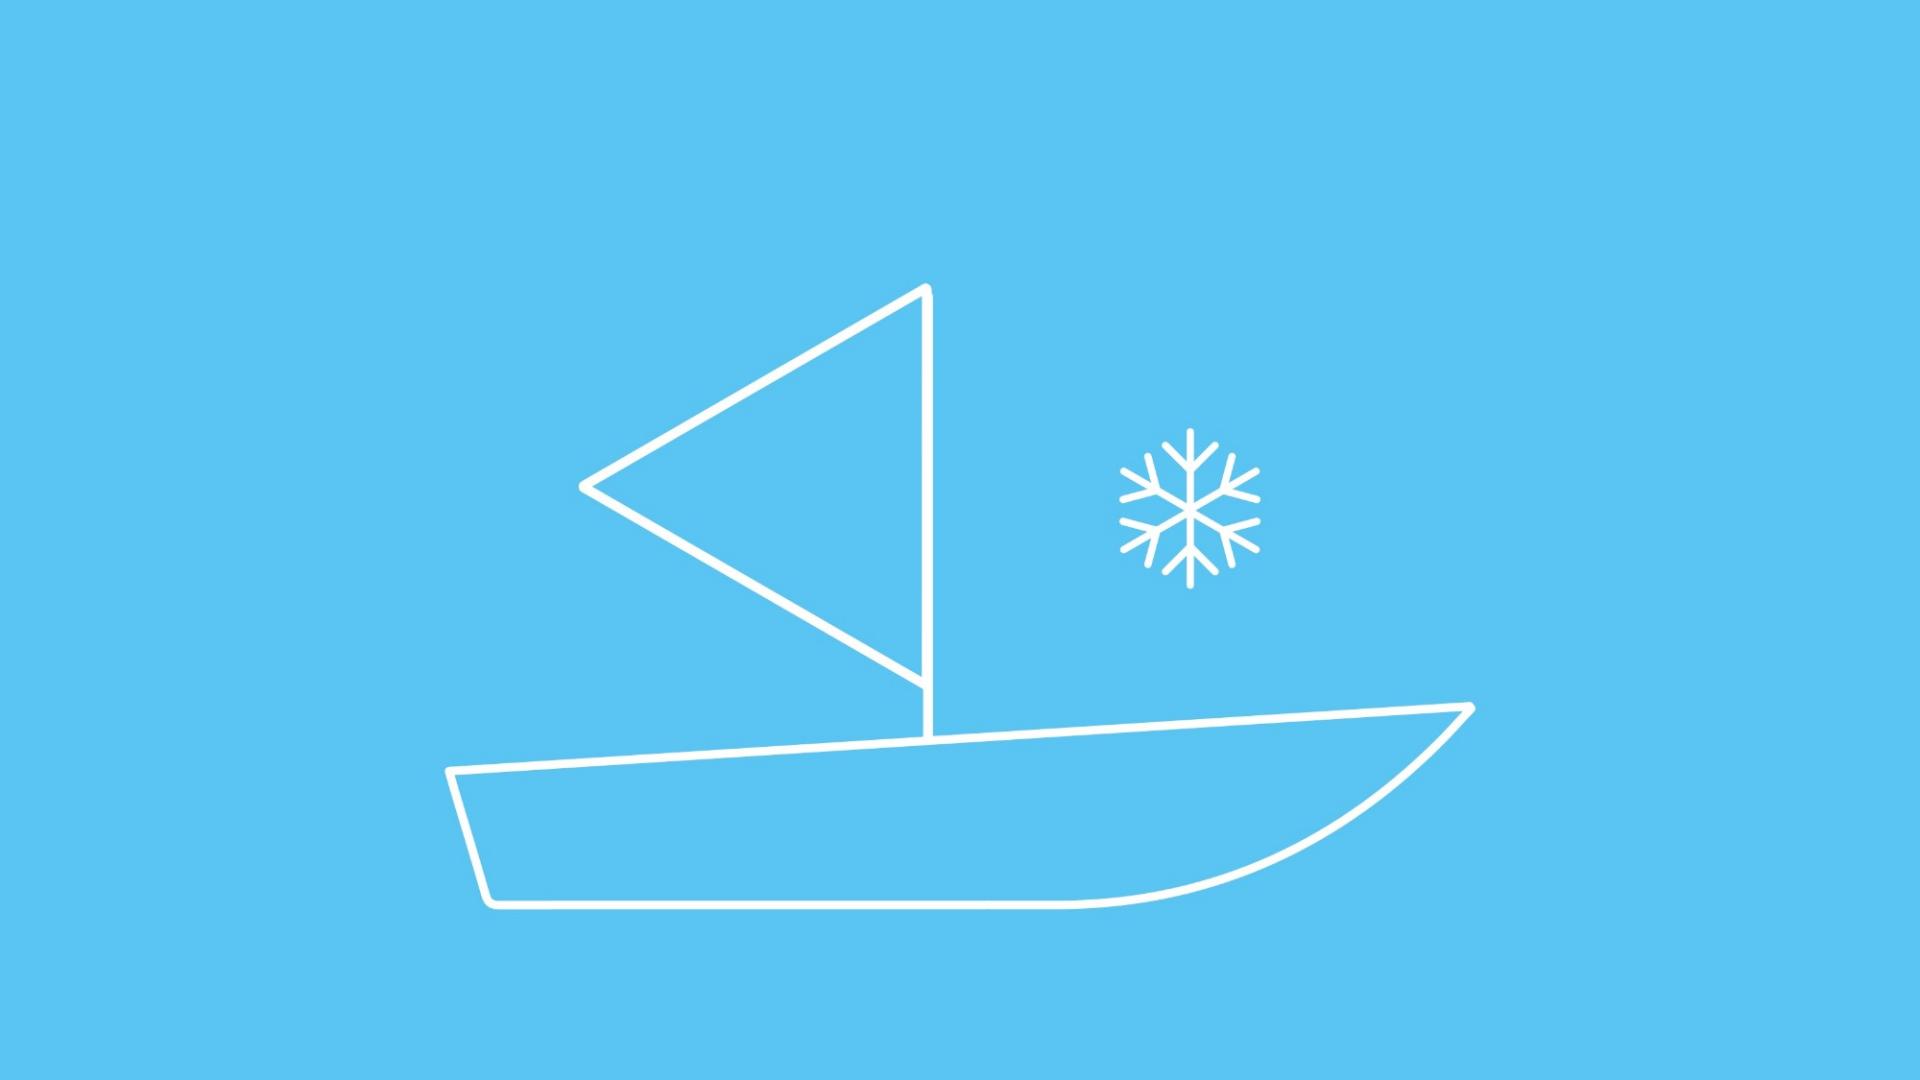 Die Grafik zeigt ein Segelboot in Icon-Form neben einer Schneeflocke. 